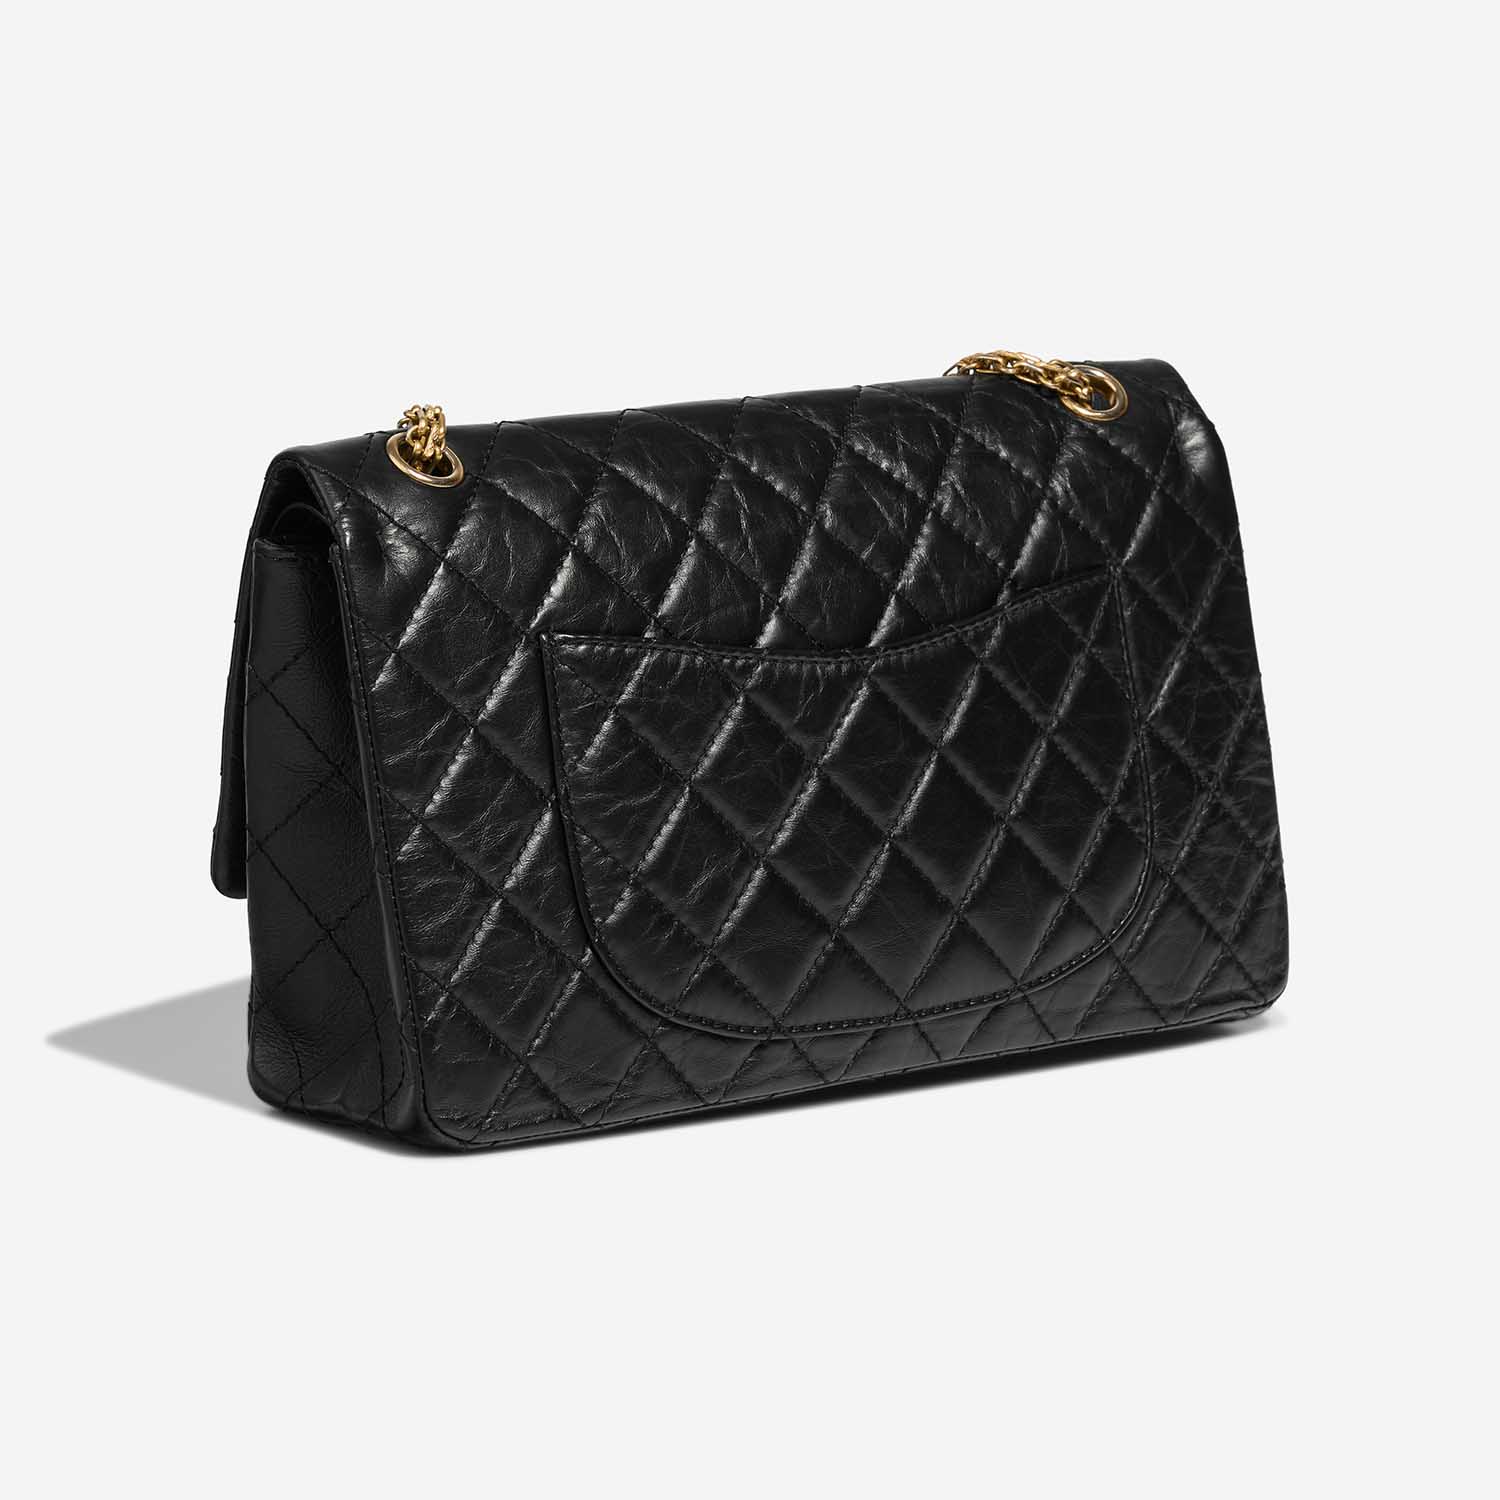 Chanel 255 226 Black Side Back | Verkaufen Sie Ihre Designer-Tasche auf Saclab.com